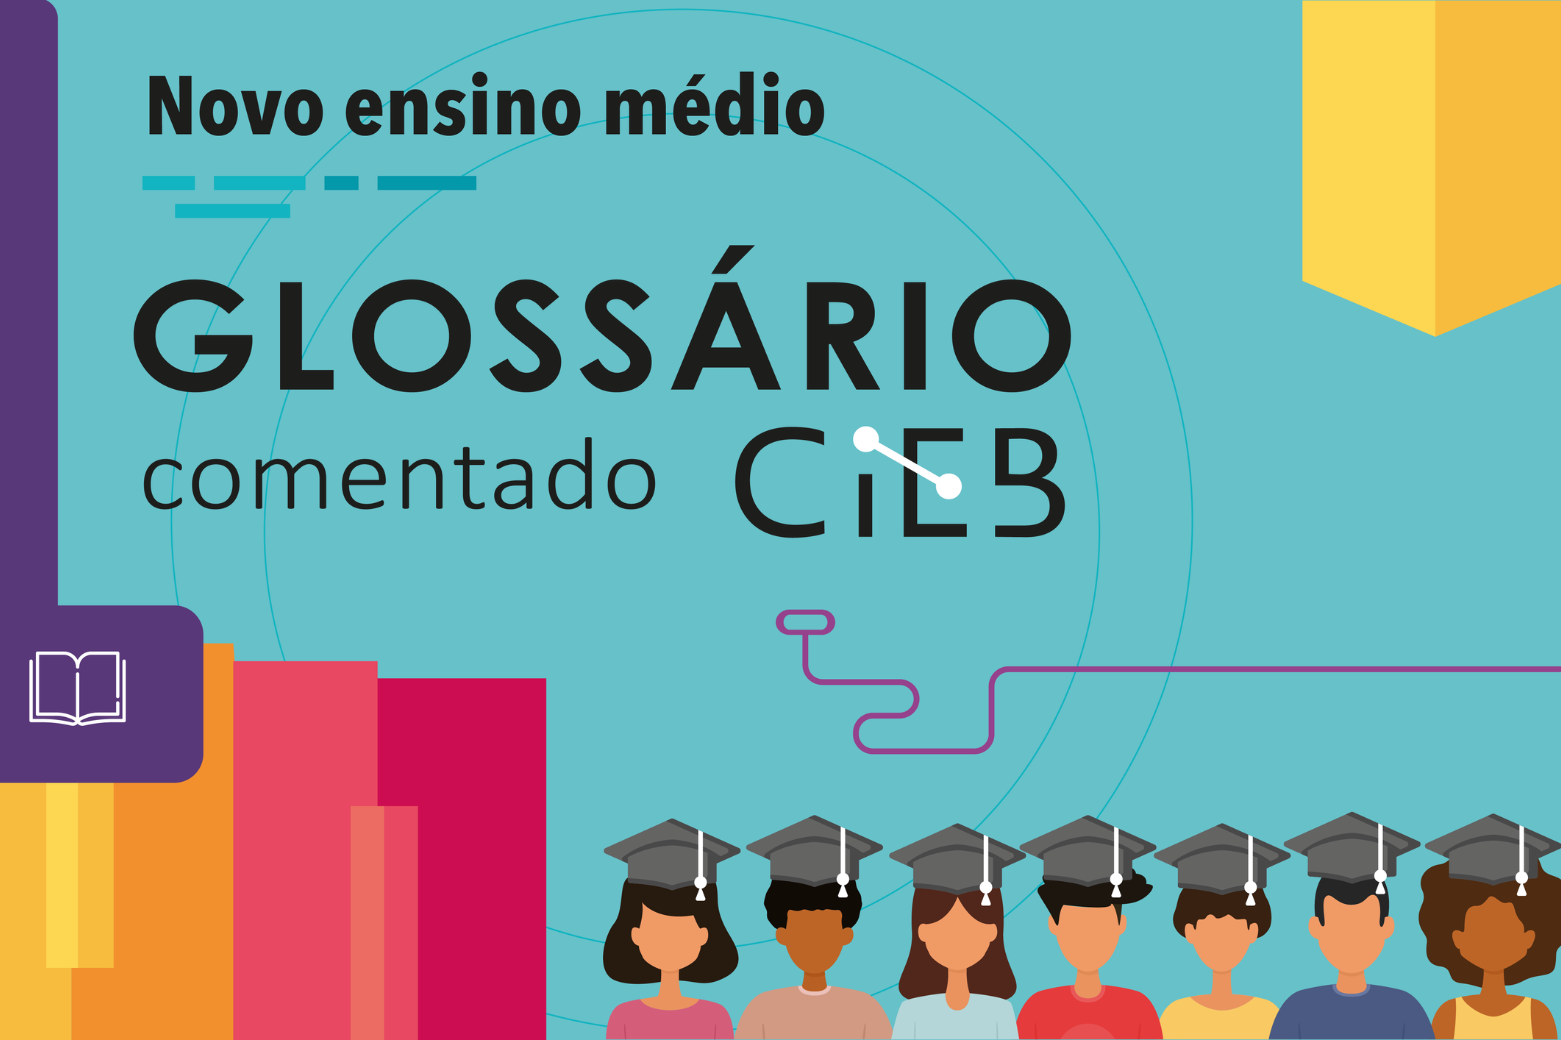 Glossário explica termos relacionados ao novo ensino médio e à formação técnica e profissional